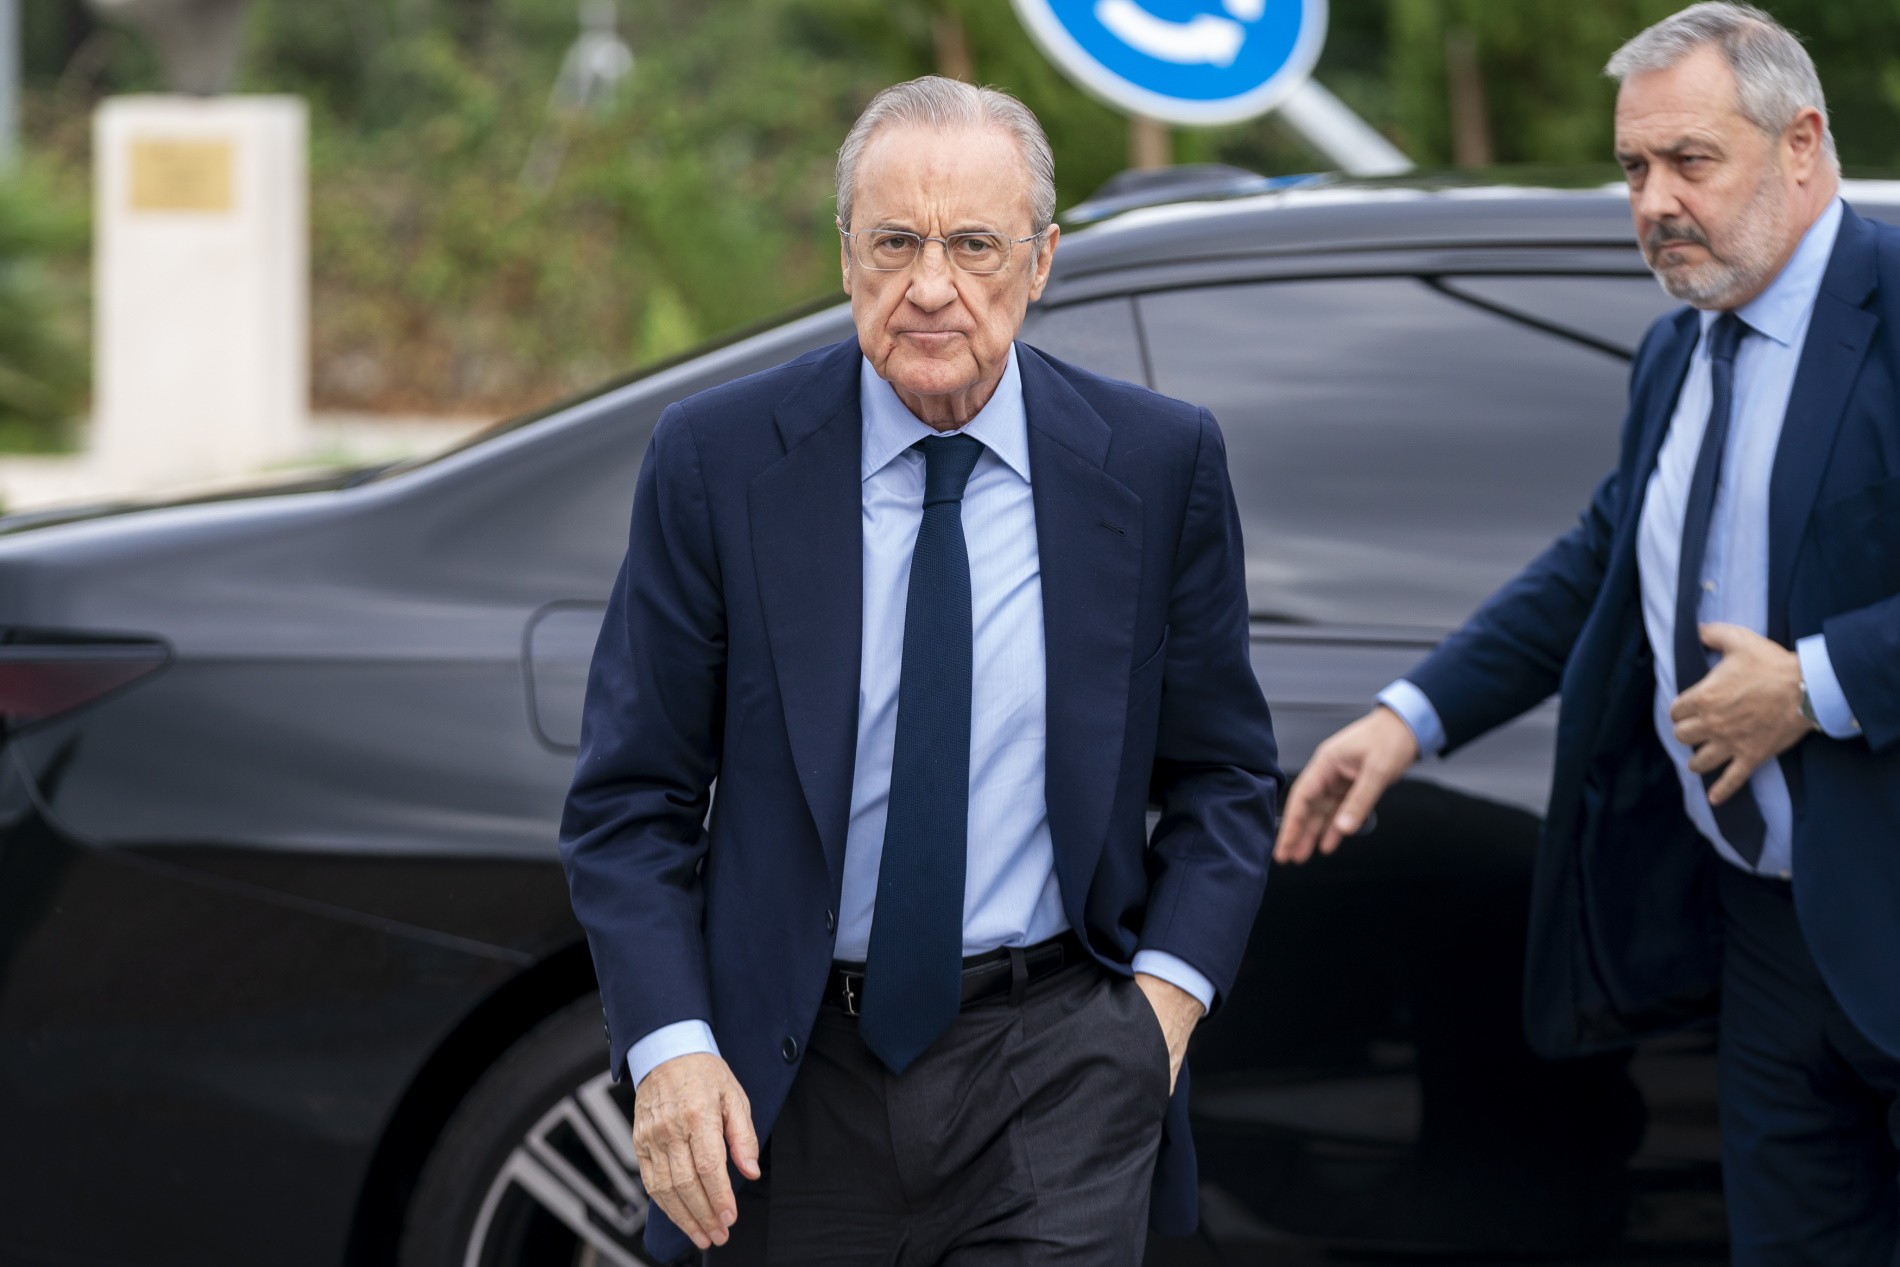 El Nápoles llega a Madrid para negociar la salida con Florentino Pérez en enero